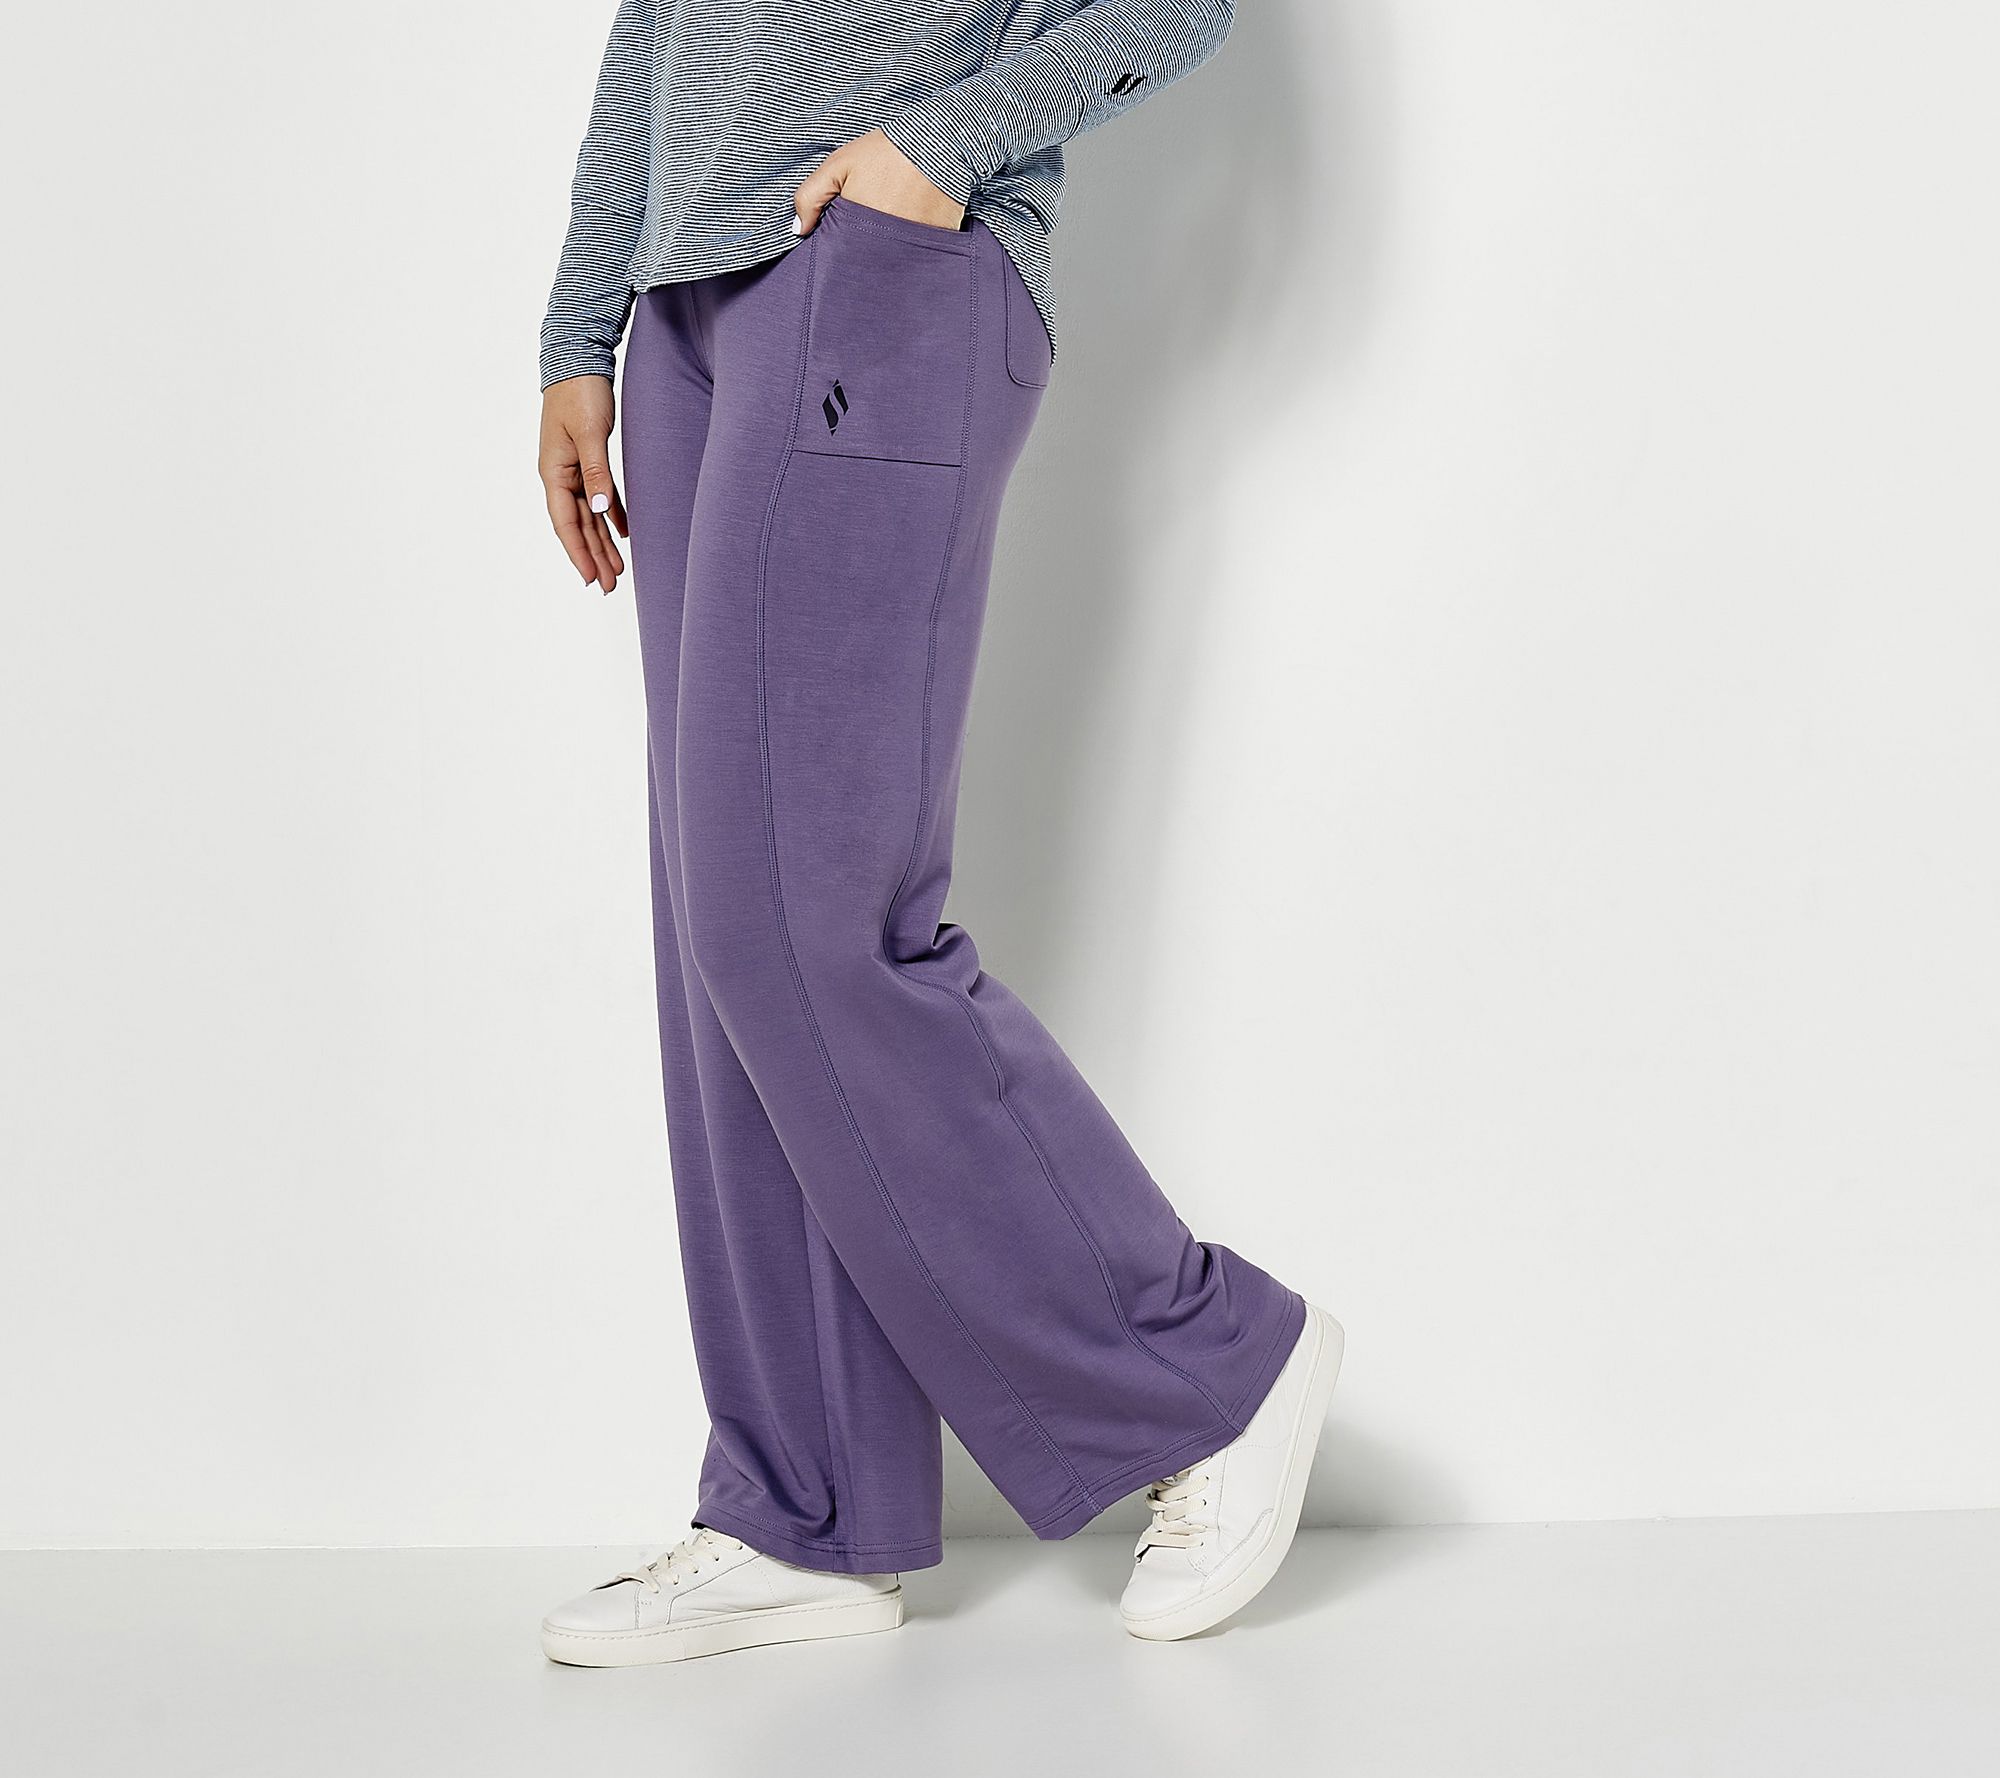 SKECHLUXE Restful 4-Pocket Pant Pocket Pants, Comfort Wear,, 42% OFF